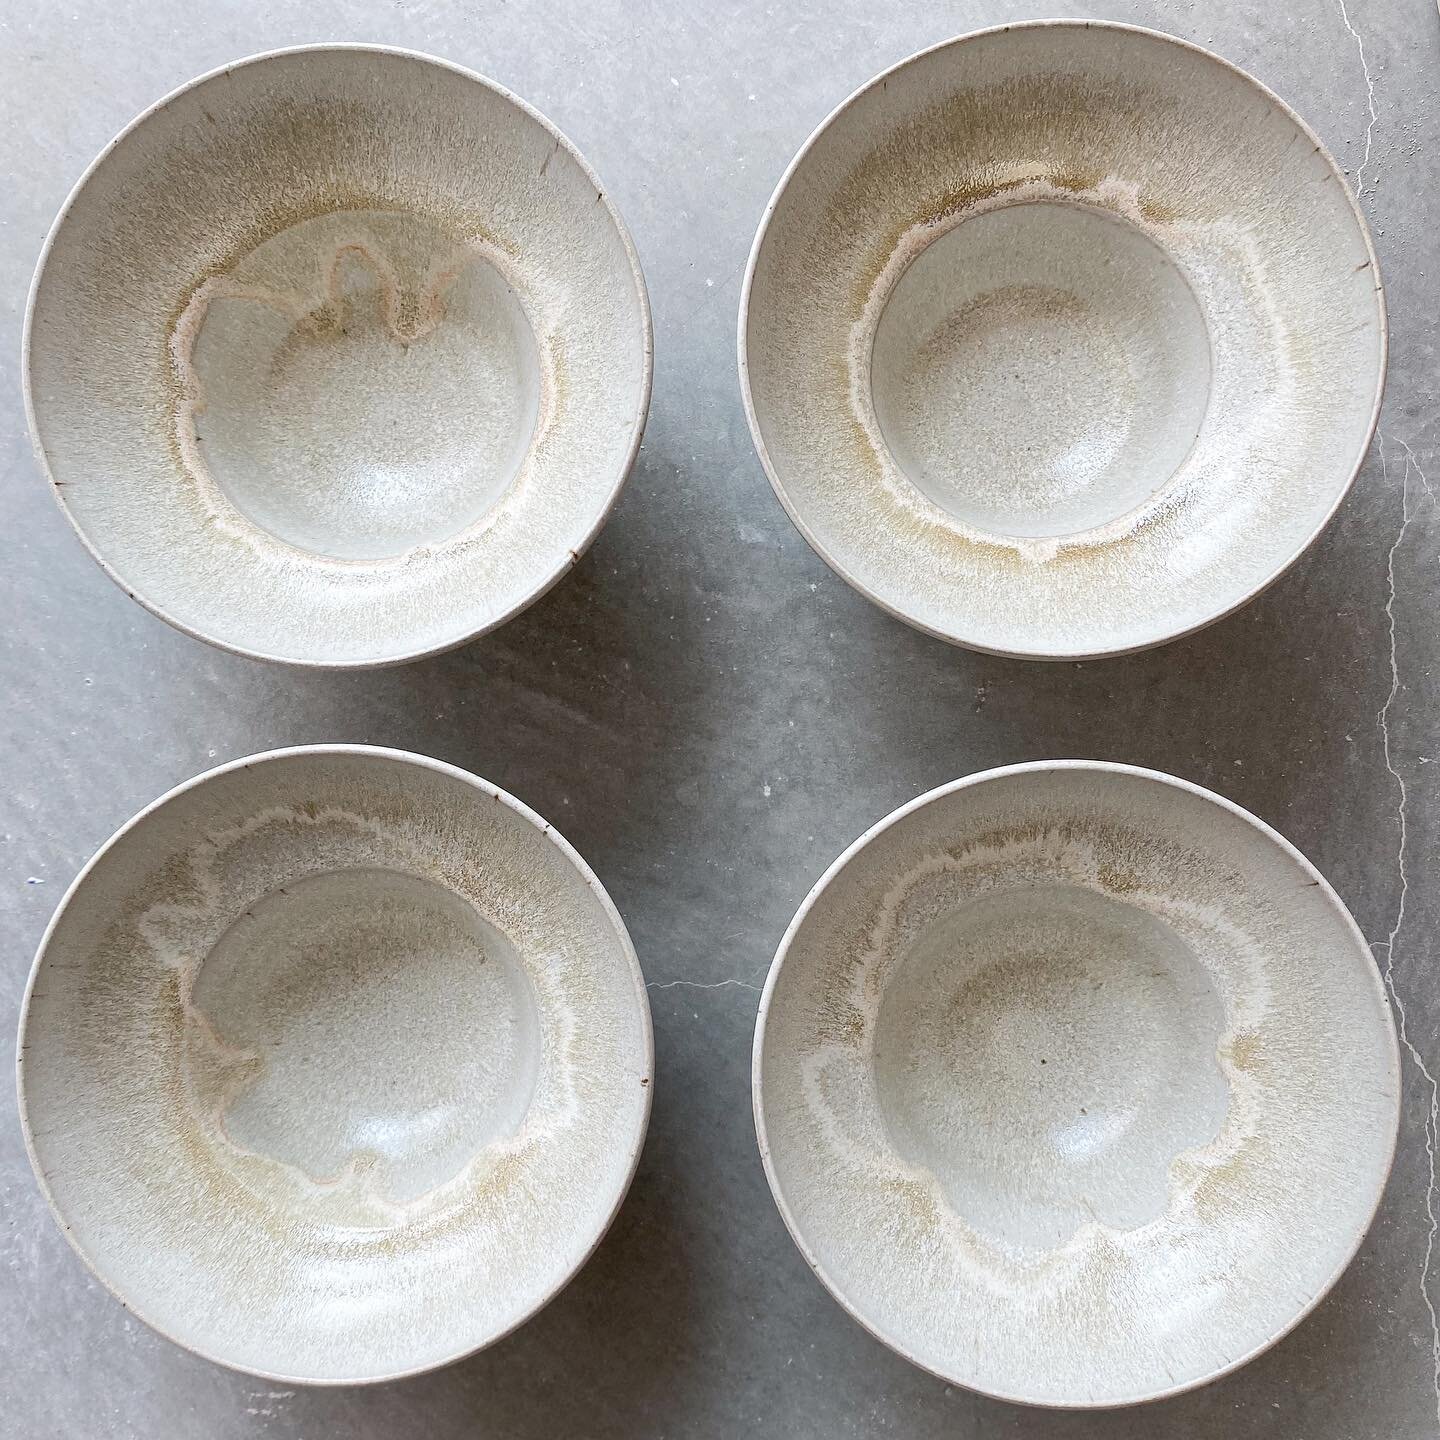 L&rsquo;int&eacute;rieur des bols, l&rsquo;&eacute;mail prend une toute autre dimension avec ce galbe et la cassure 🍶🌸 
.
.
.
#artdelatable #vaisselle #bol #wheelthrownpottery #stoneware #ceramics #lyon #ceramiste